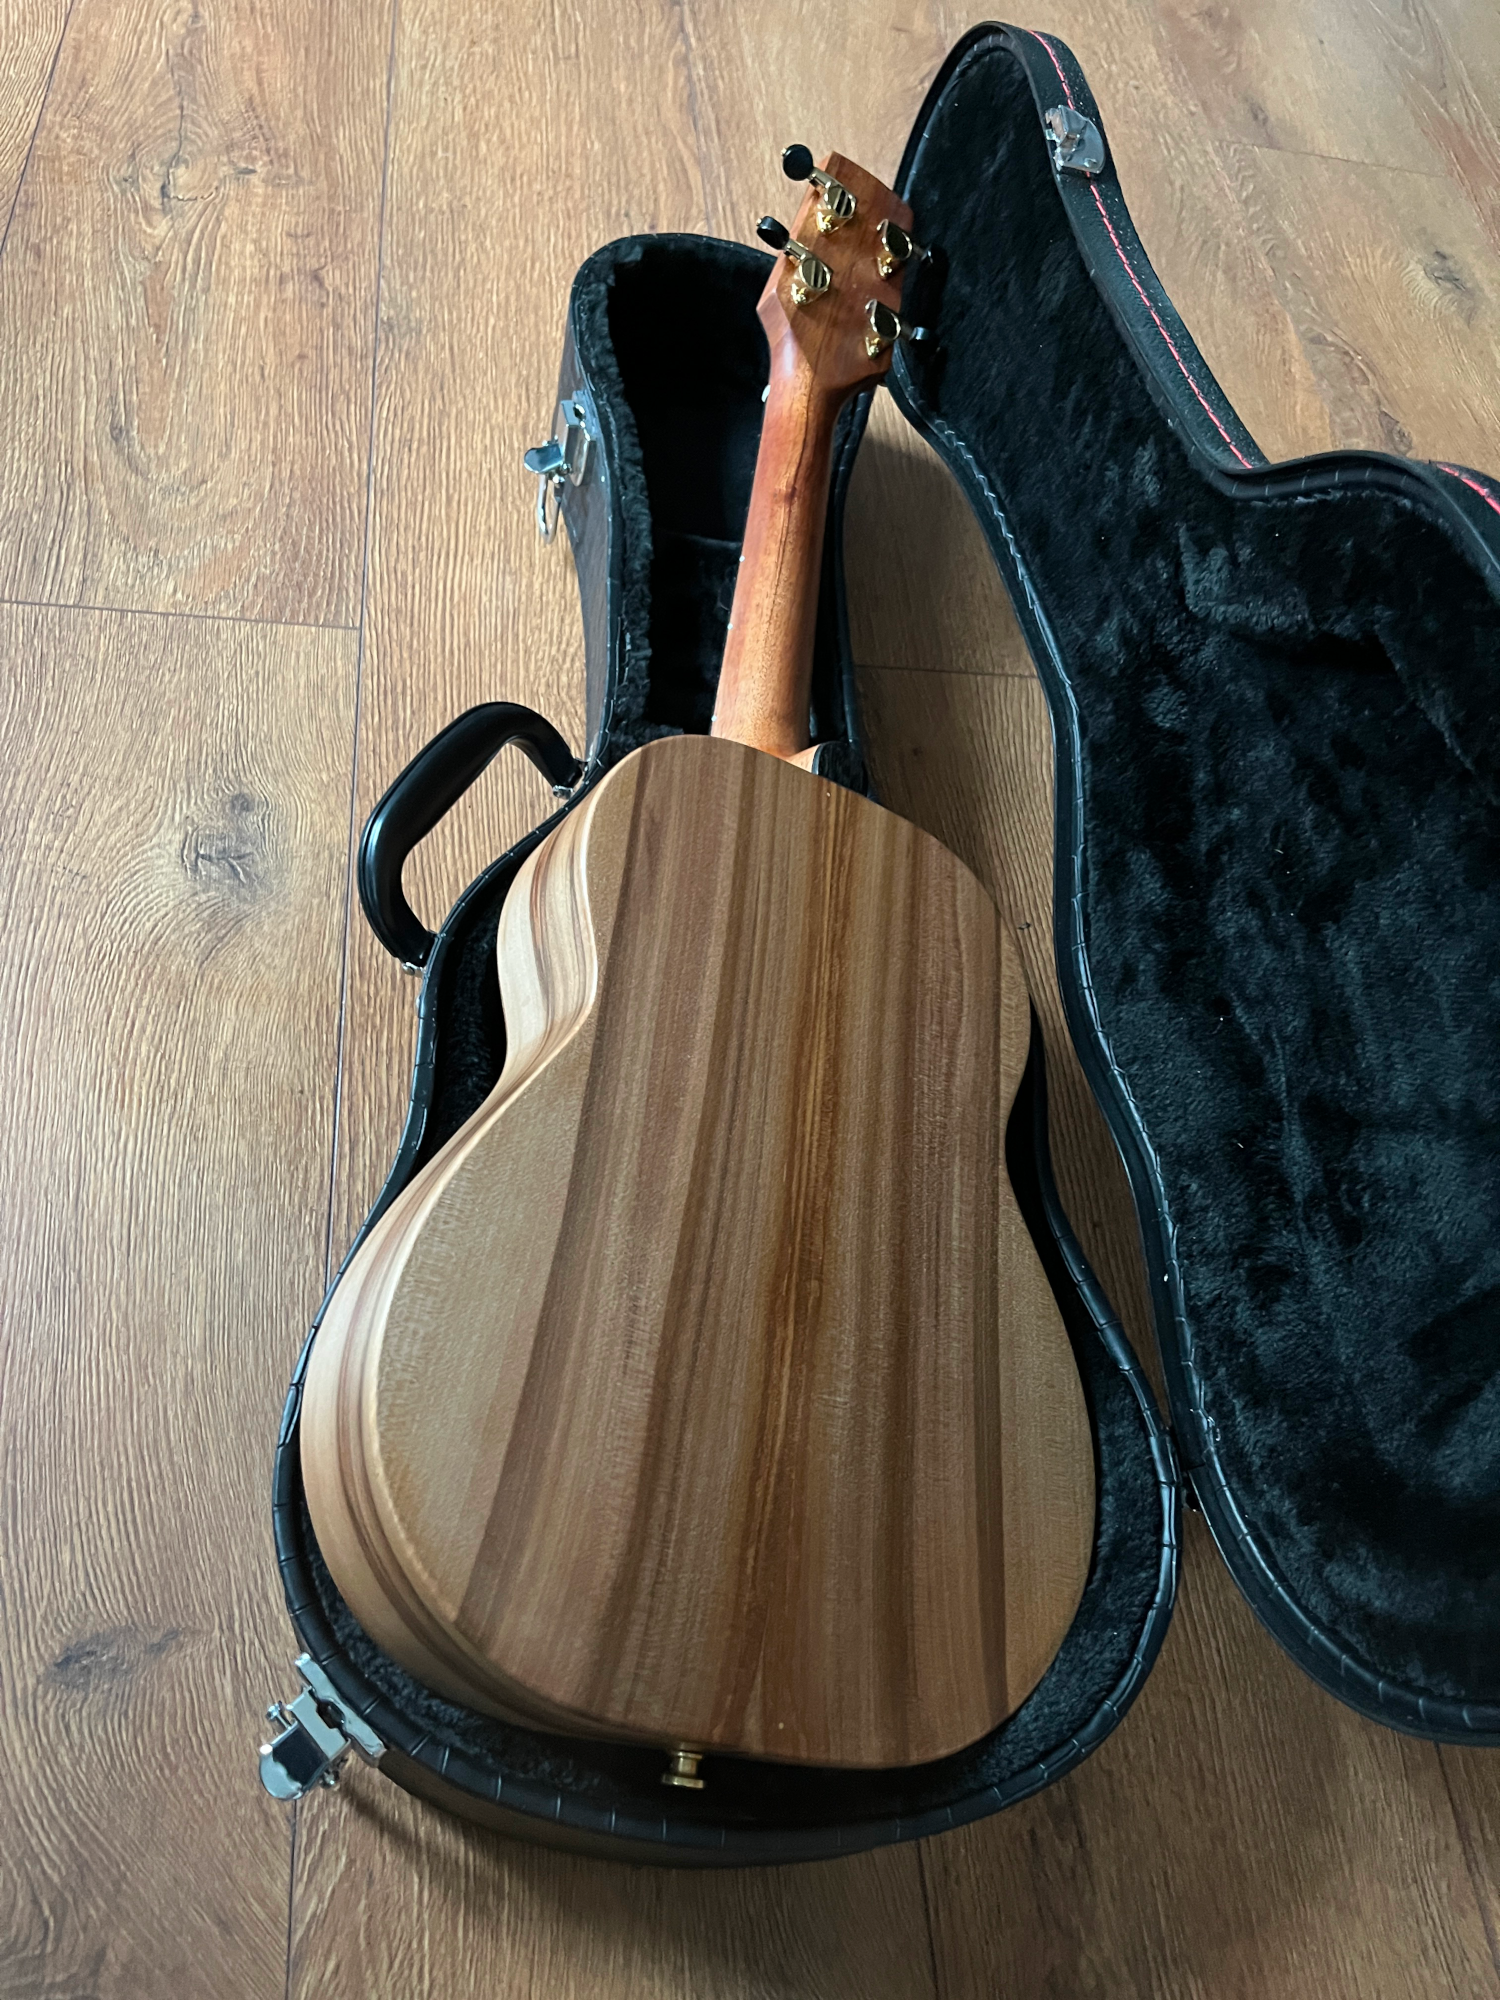 back of mjk tenor ukulele red gum /satin walnut wood